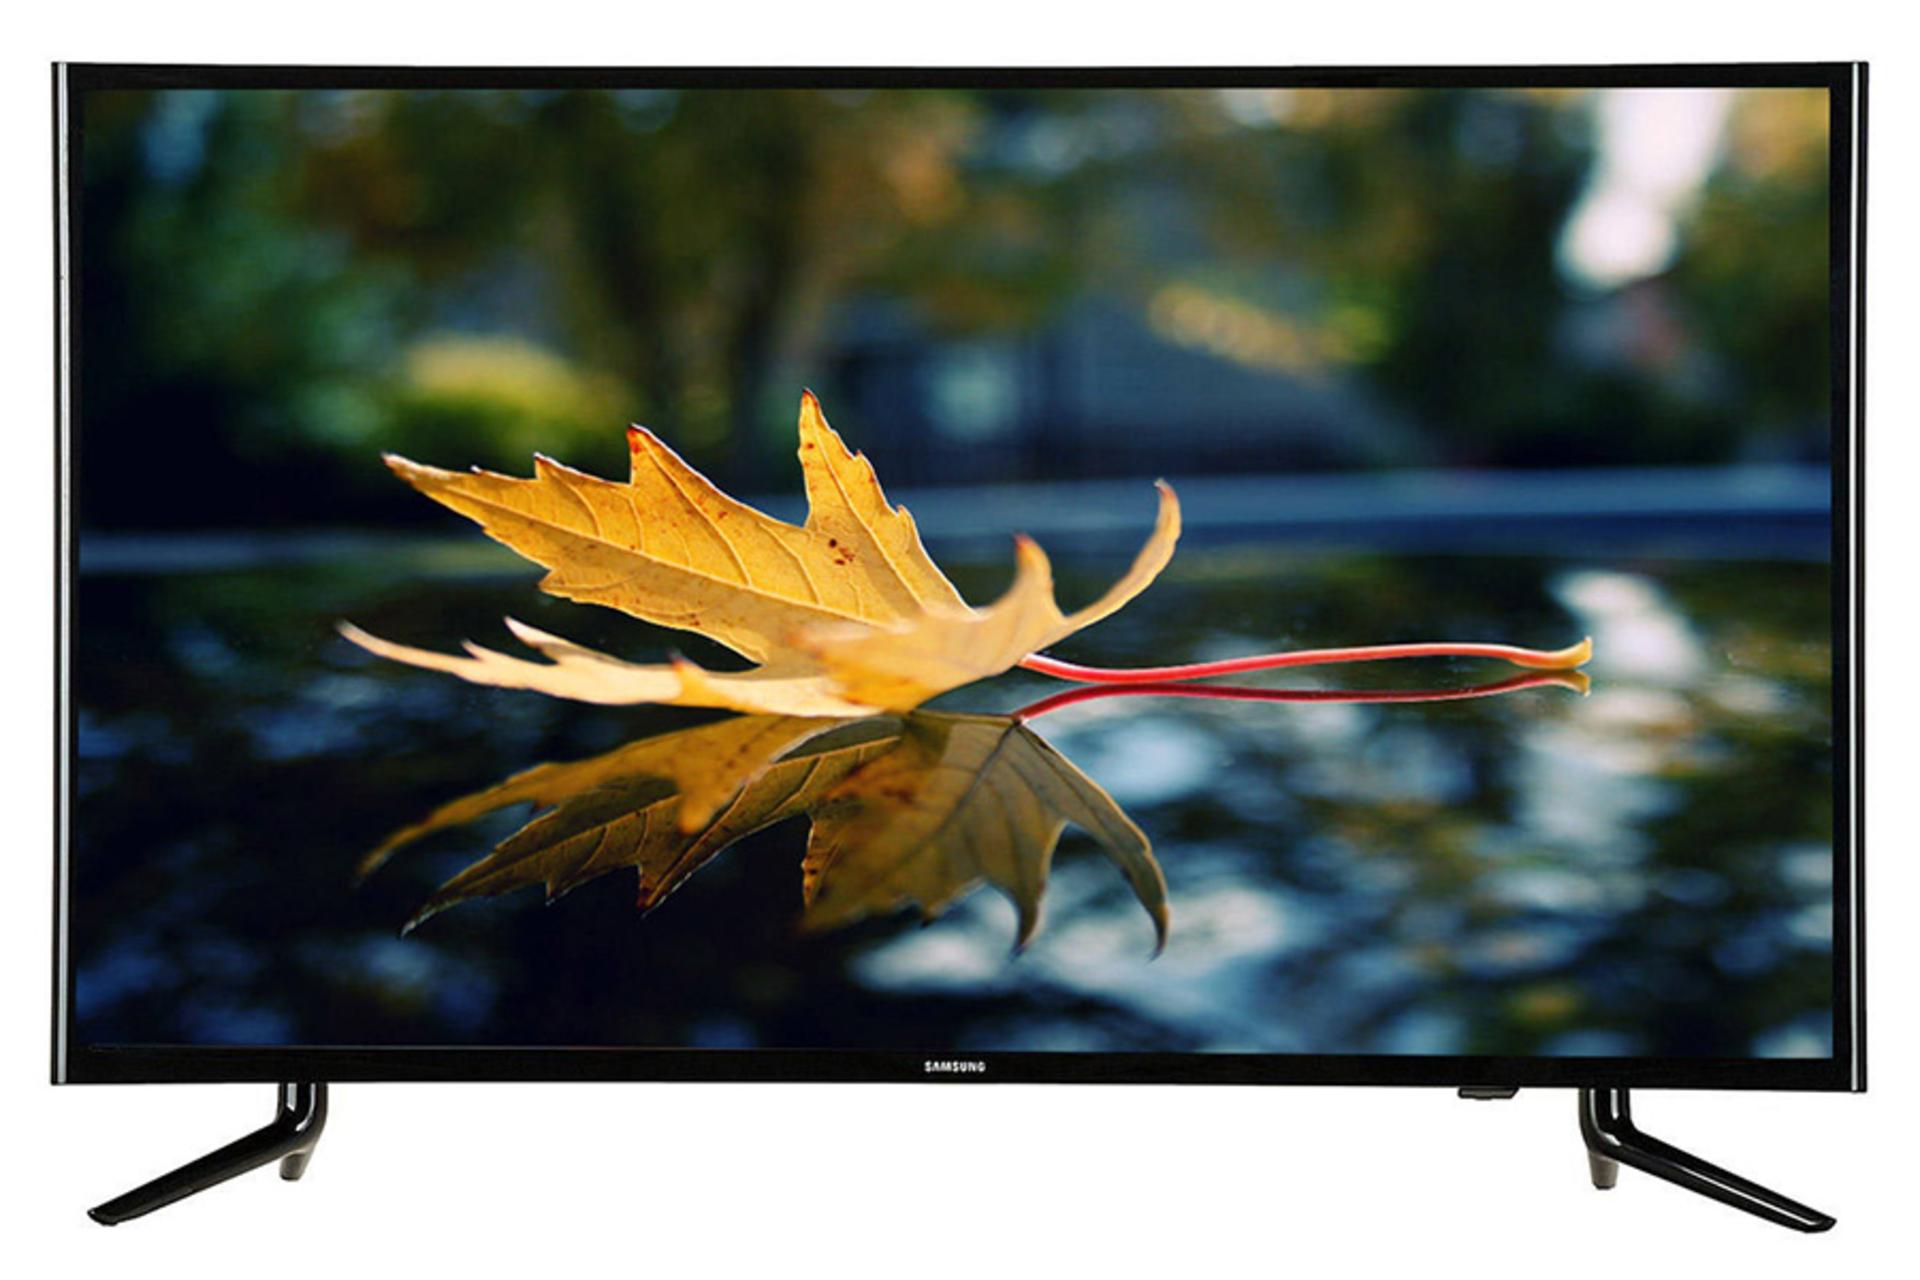 نمای جلو تلویزیون سامسونگ N5880 مدل 43 اینچ با صفحه روشن